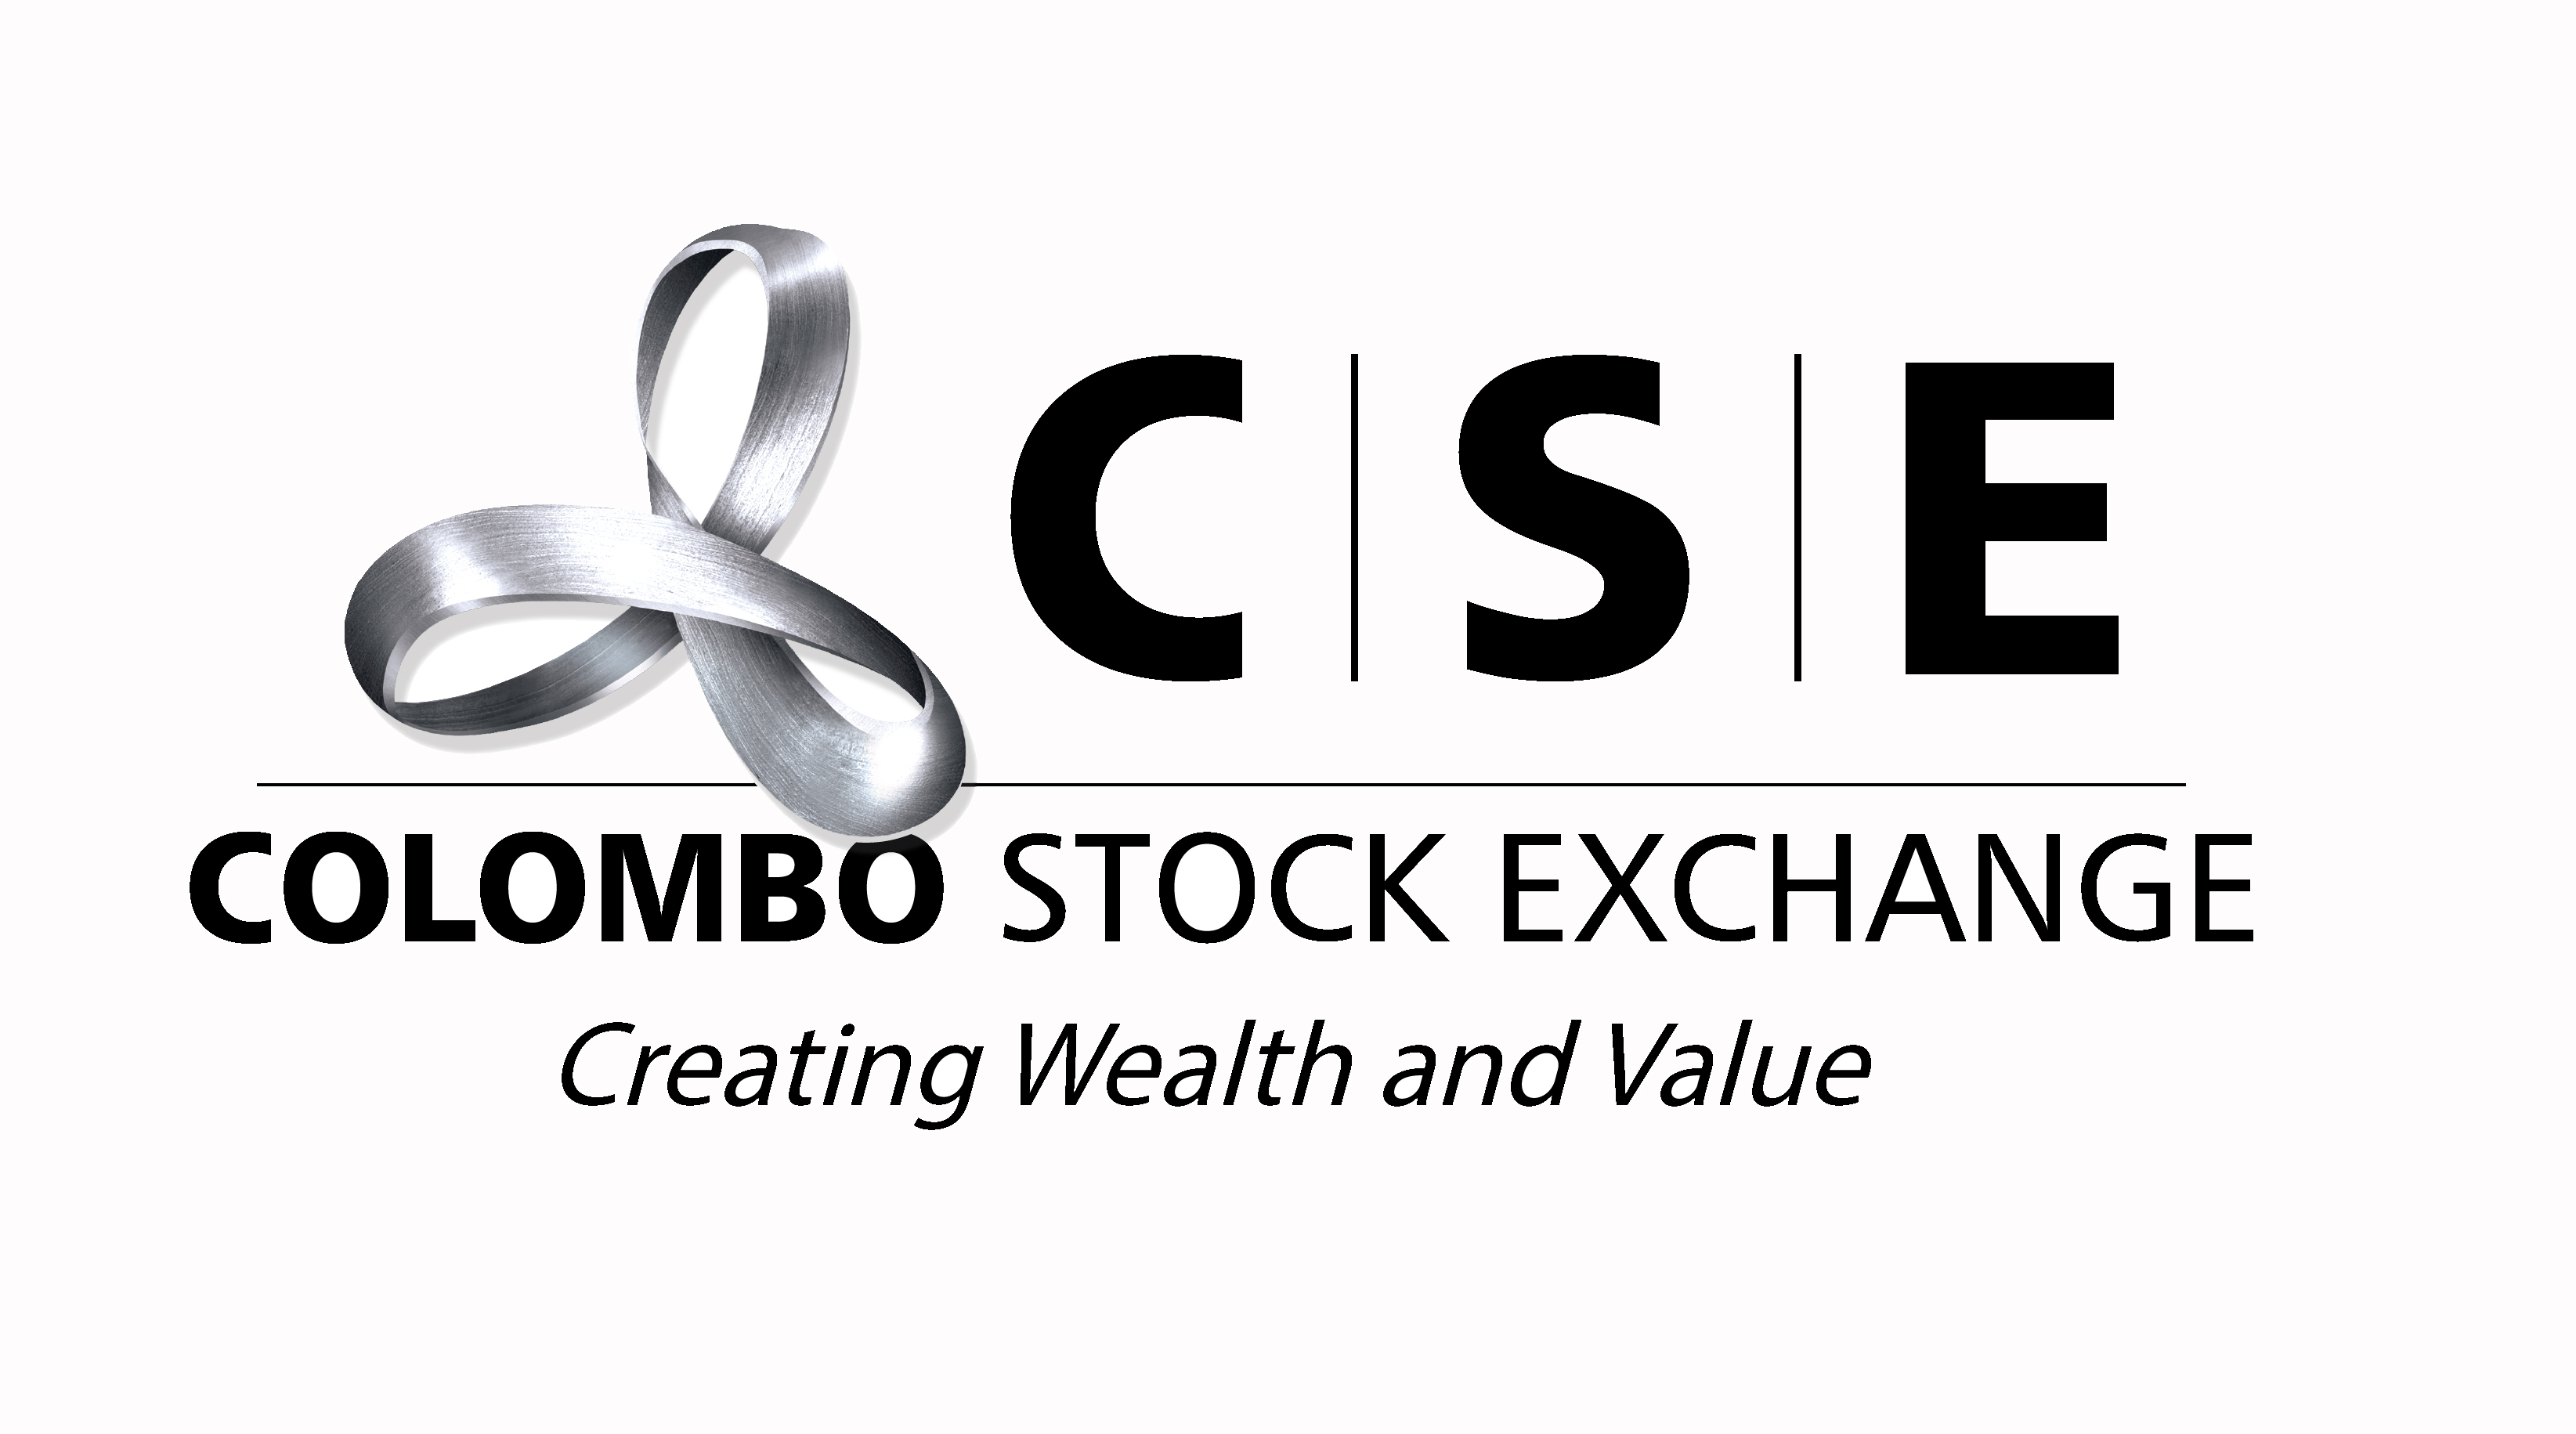 Colombo Stock Exchange